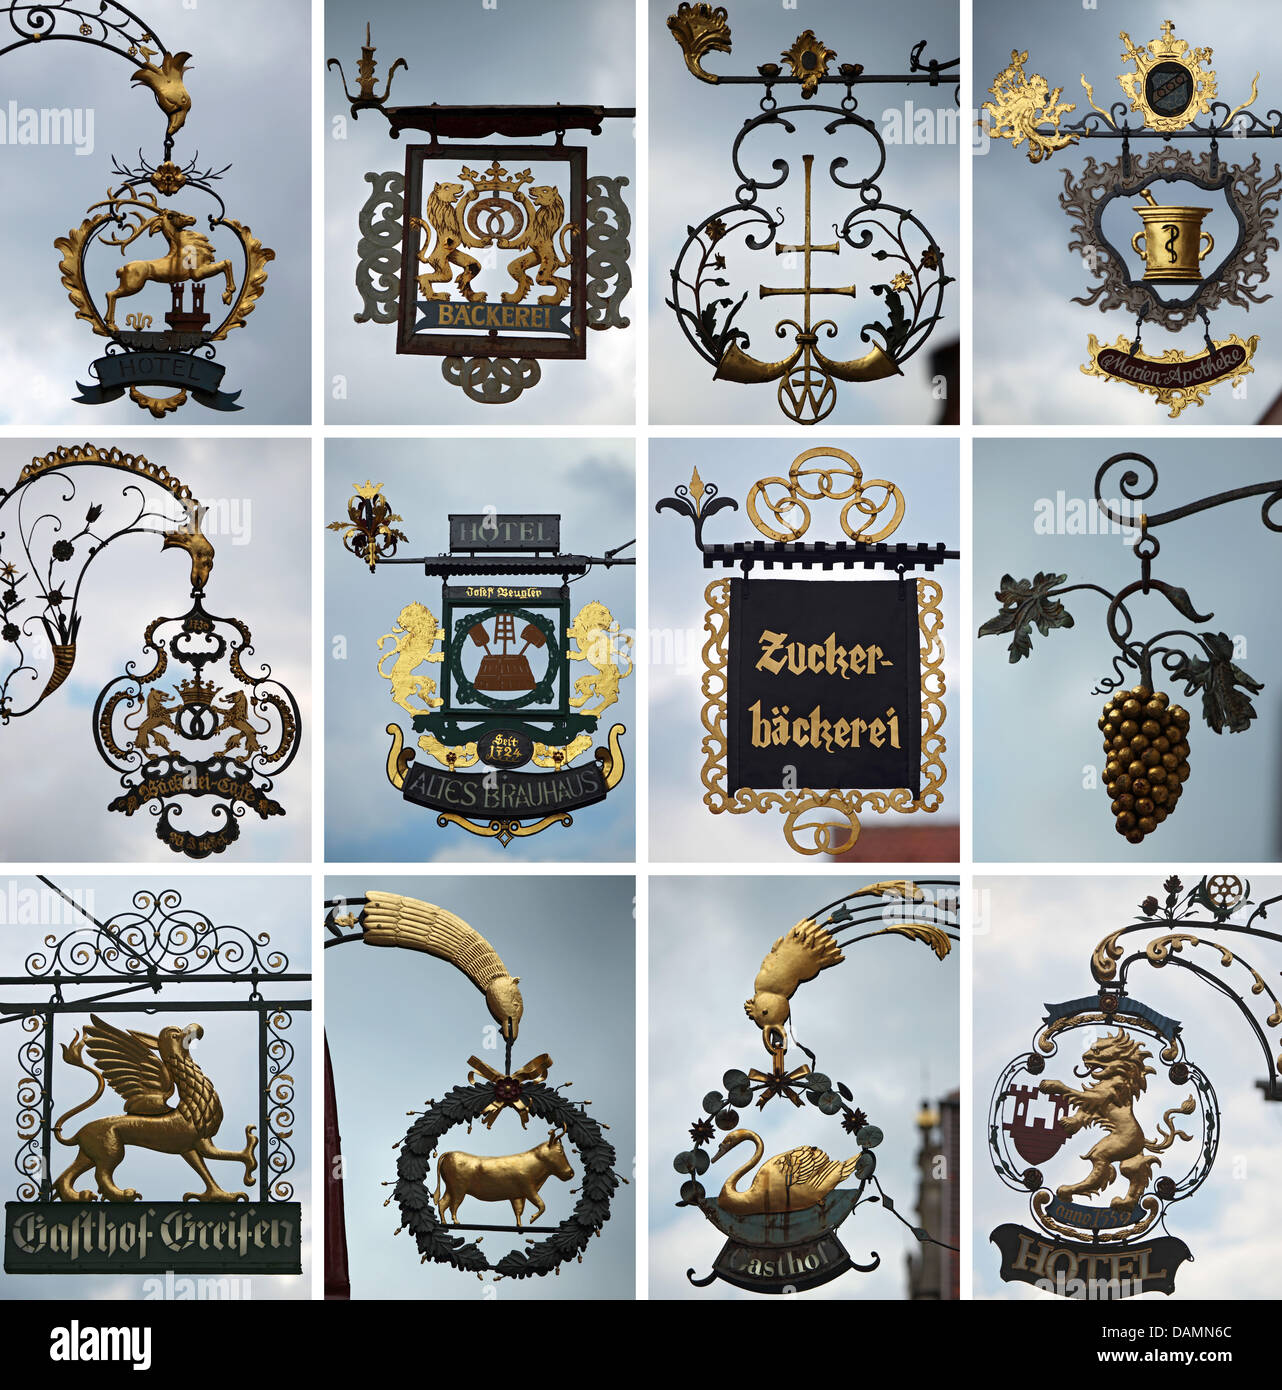 La foto montage mostra una serie di ferro battuto insegne di vari  ristoranti, alberghi e negozi a Rothenburg ob der Tauber, Germania, il 7  giugno 2011. La città di Rothenburg ha imposto